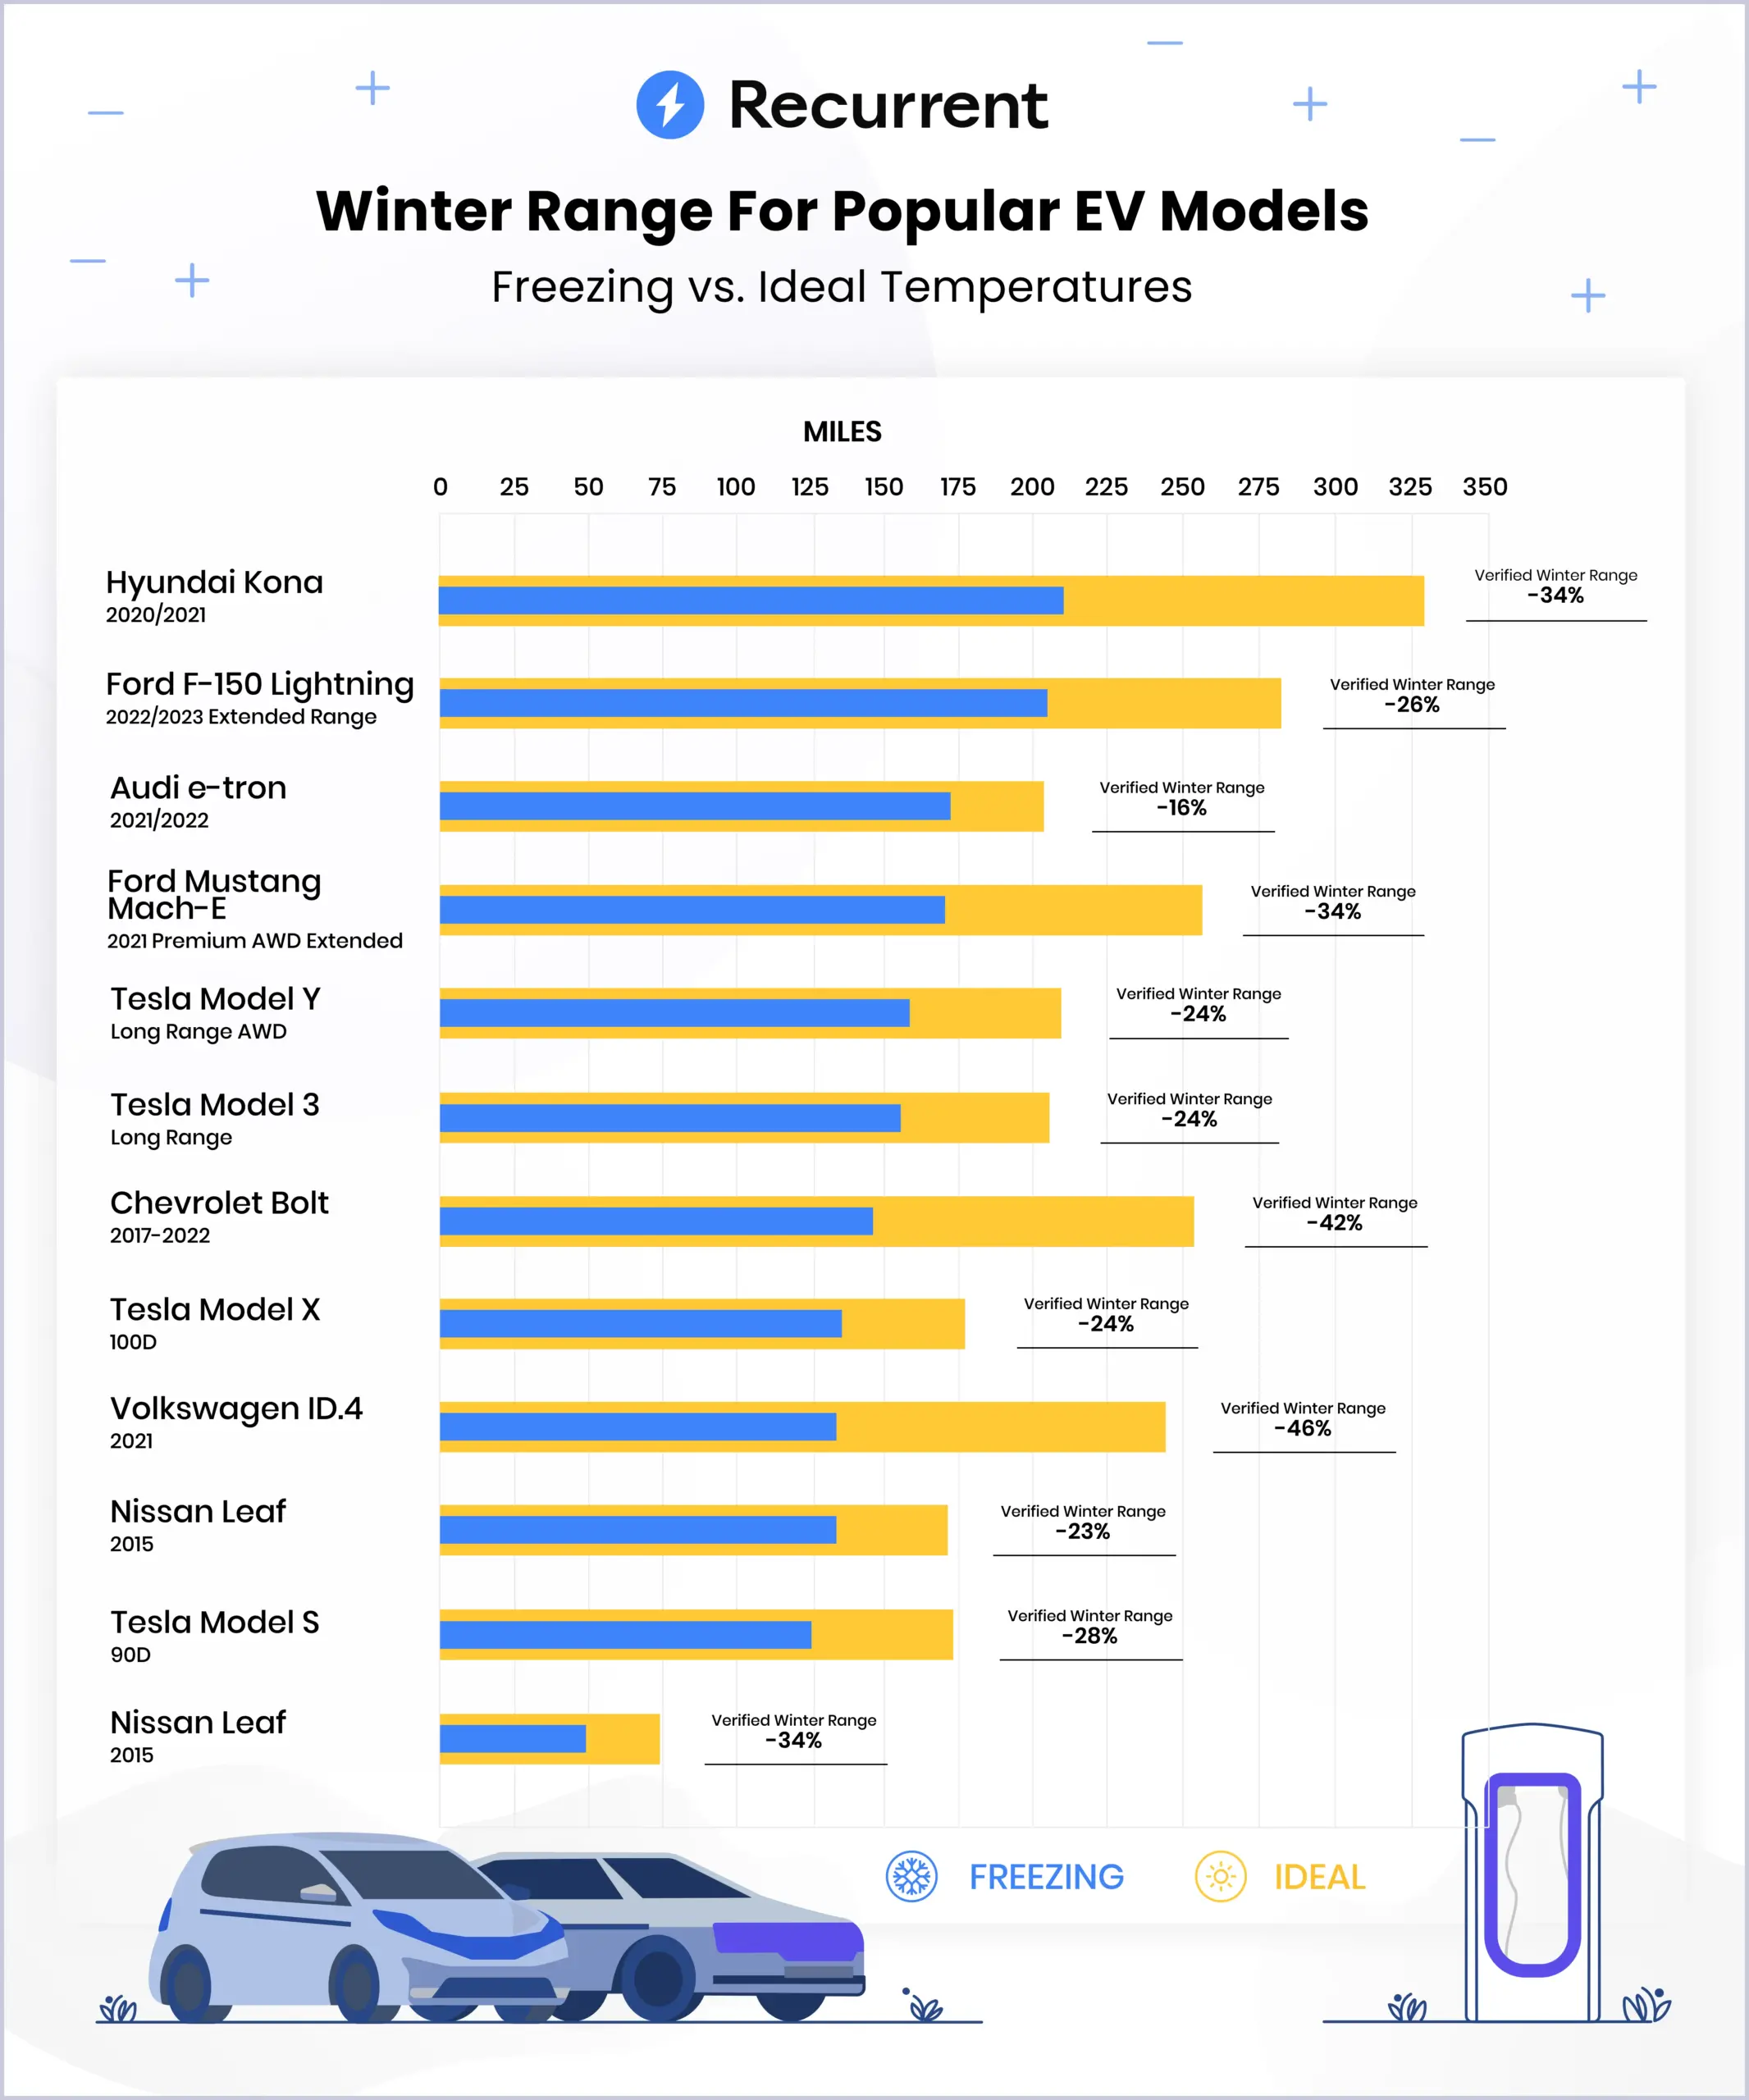 Электромобили Tesla, Audi и Nissan теряют наименьше запаса хода зимой. VW ID.4 — наибольше